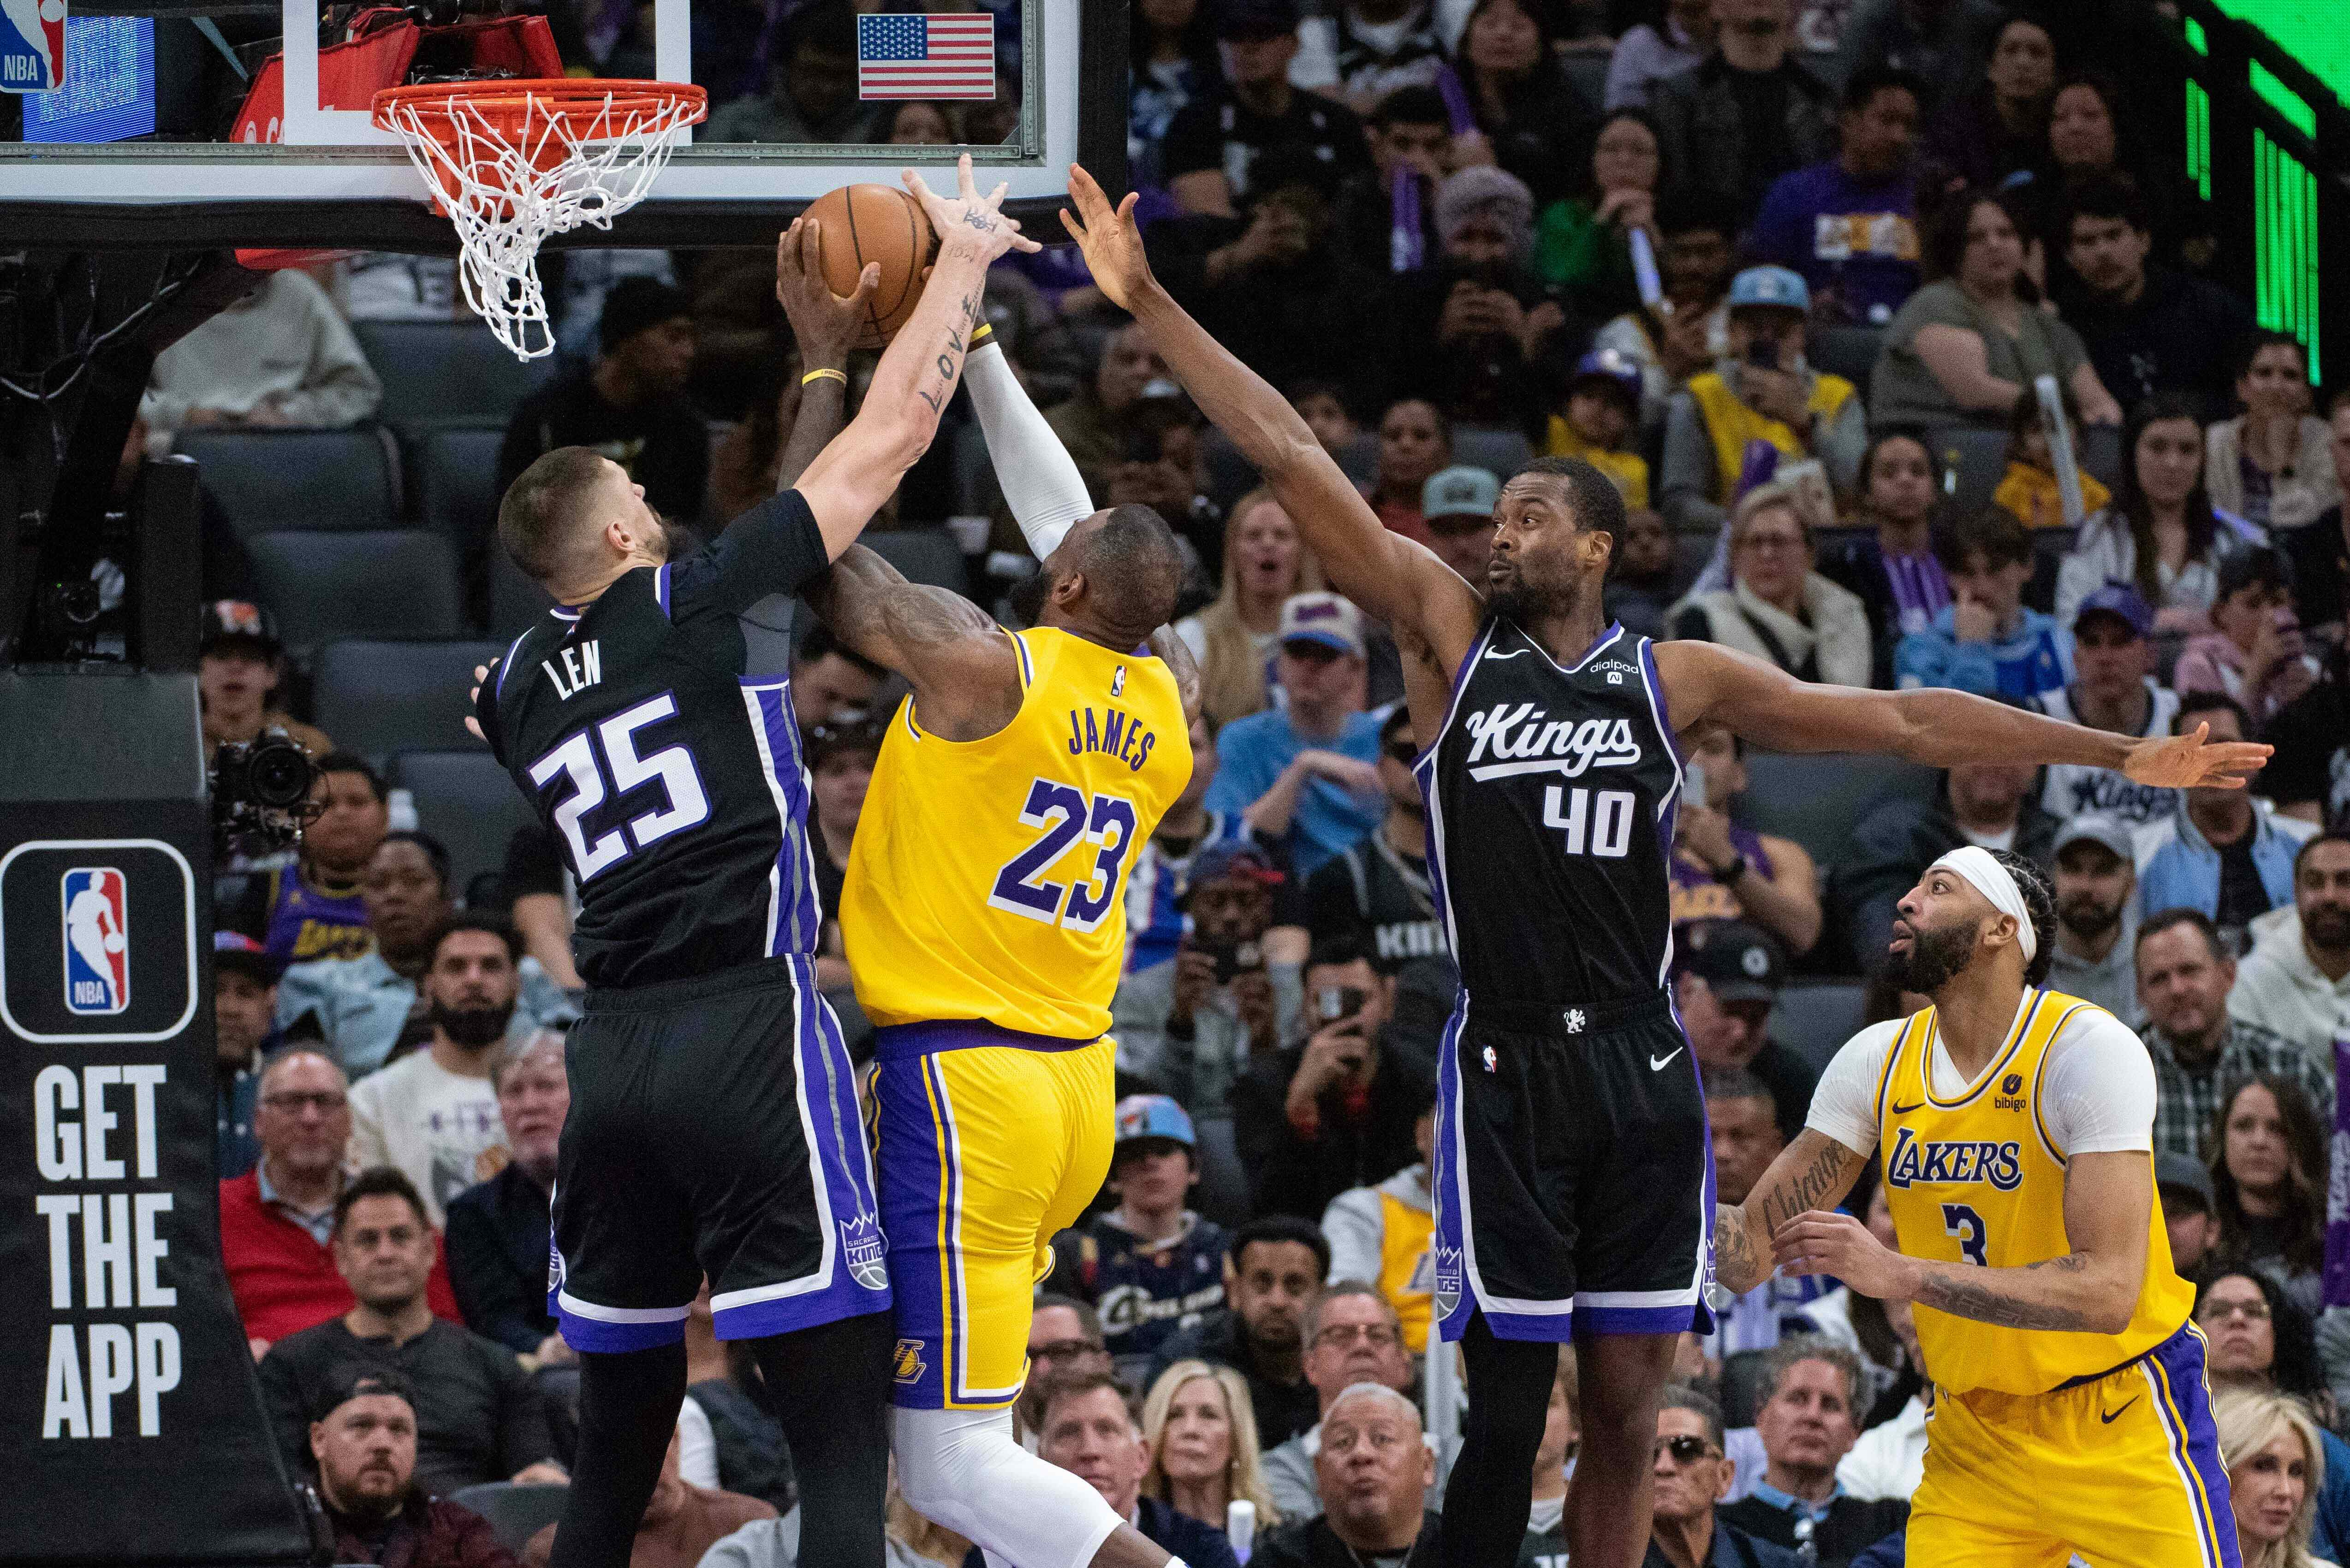 NBA roundup: Kings hang on to take down Lakers